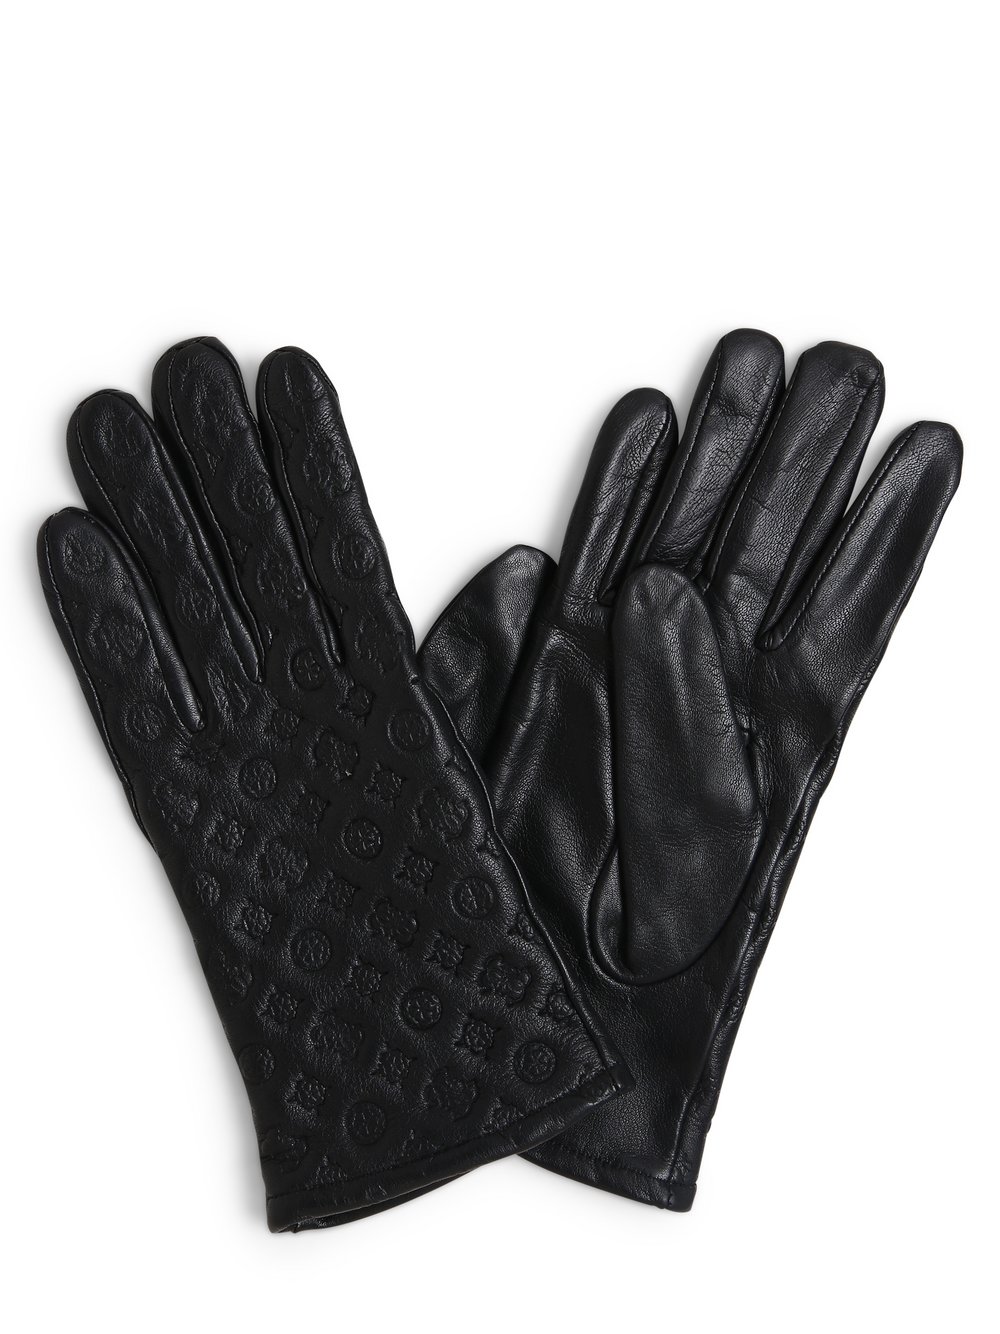 GUESS - Skórzane rękawiczki damskie, czarny